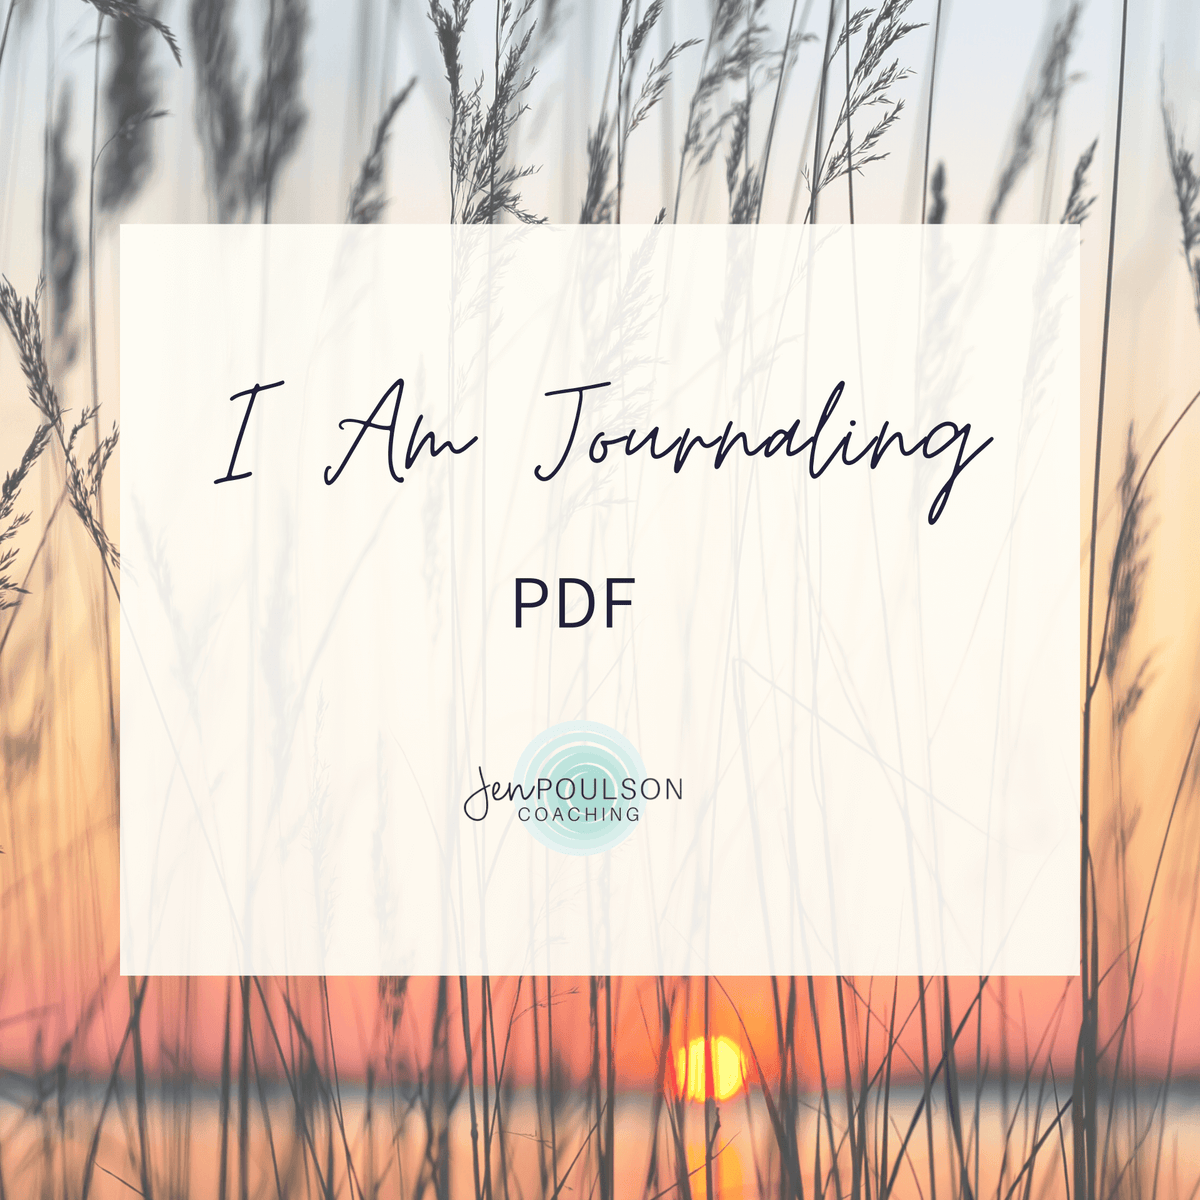 I AM Journaling PDF